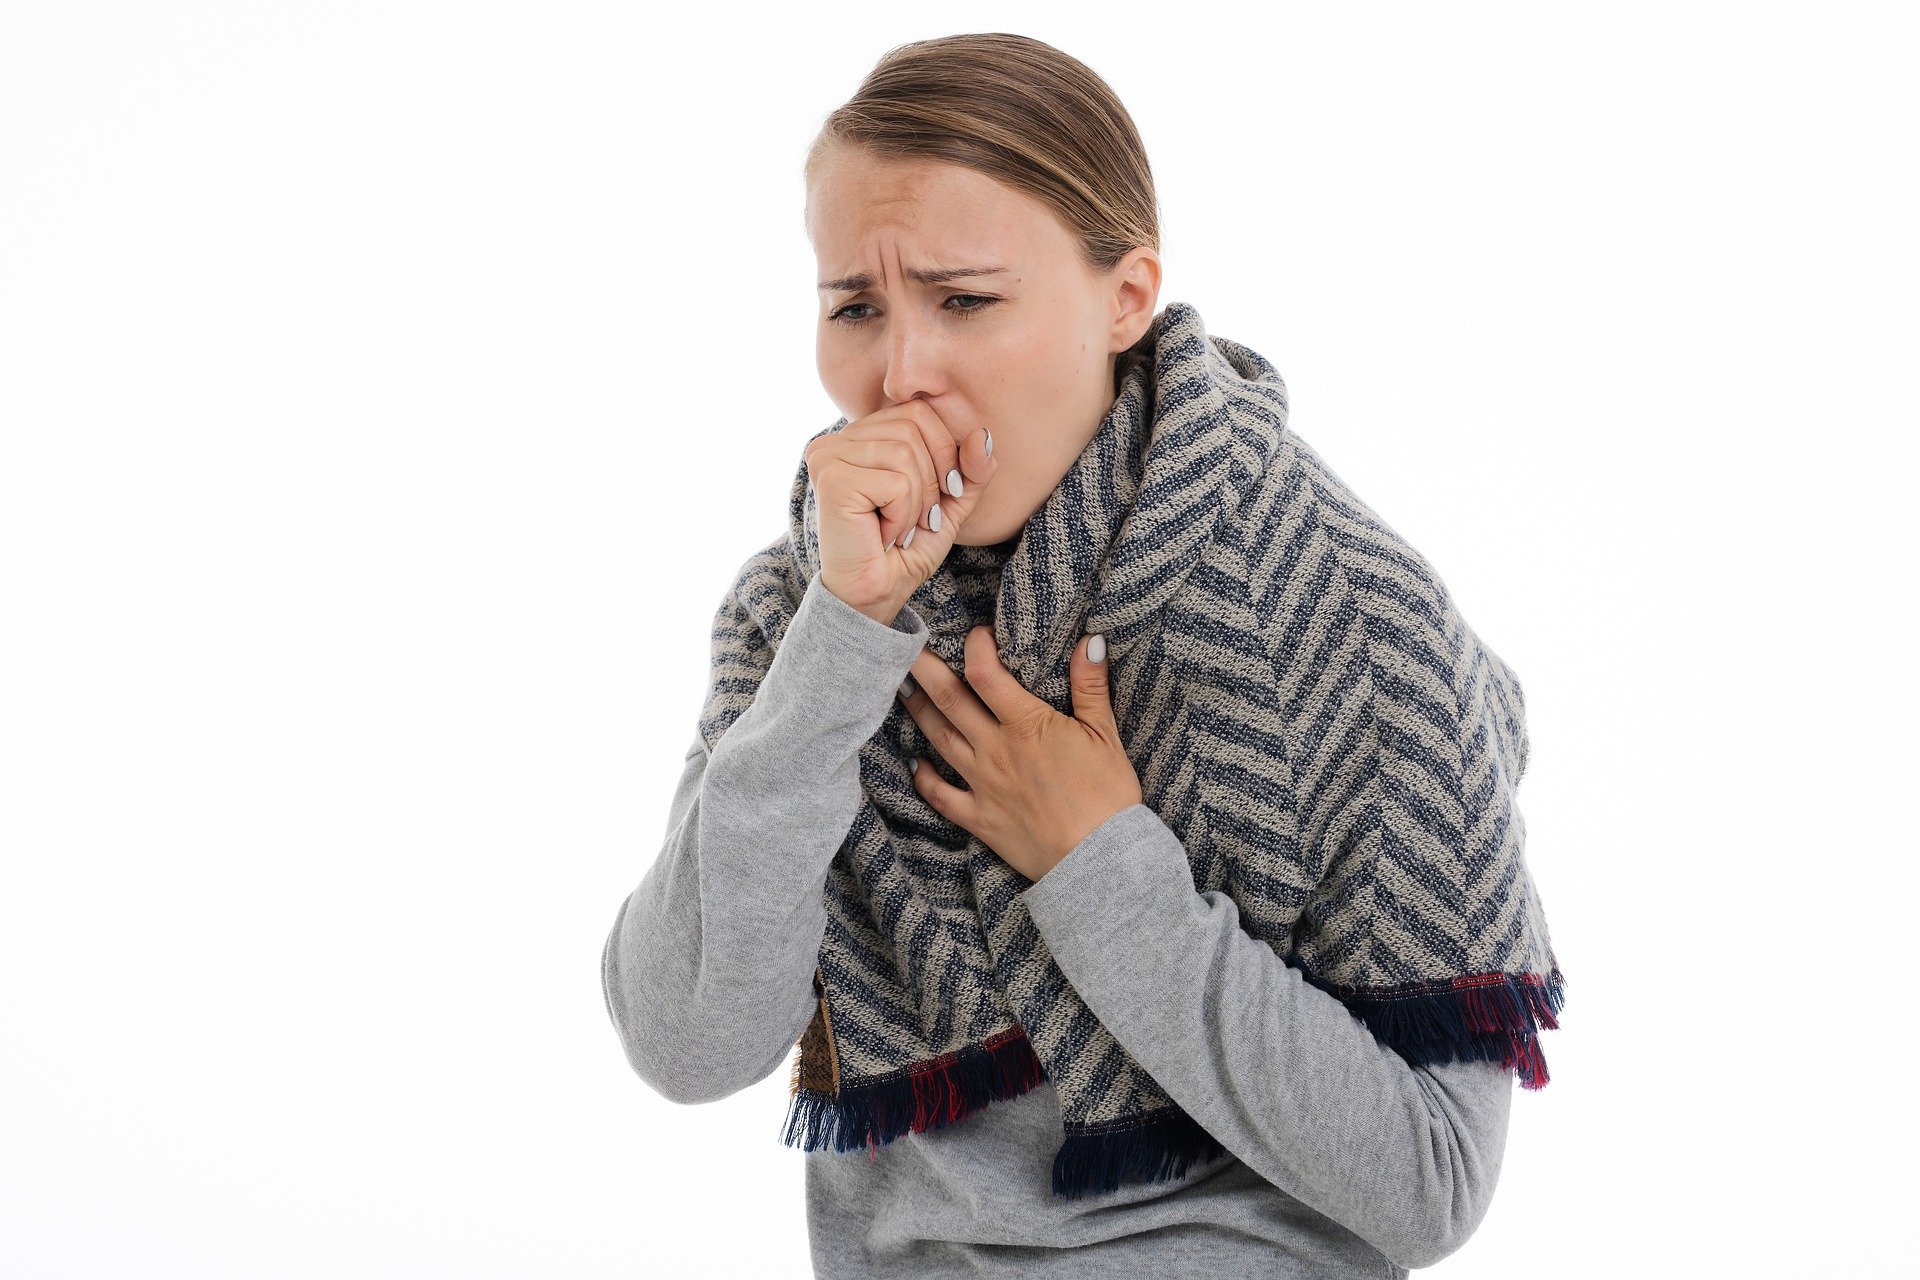 石綿肺・びまん性胸膜肥厚の認定要件たる「著しい呼吸機能障害」について